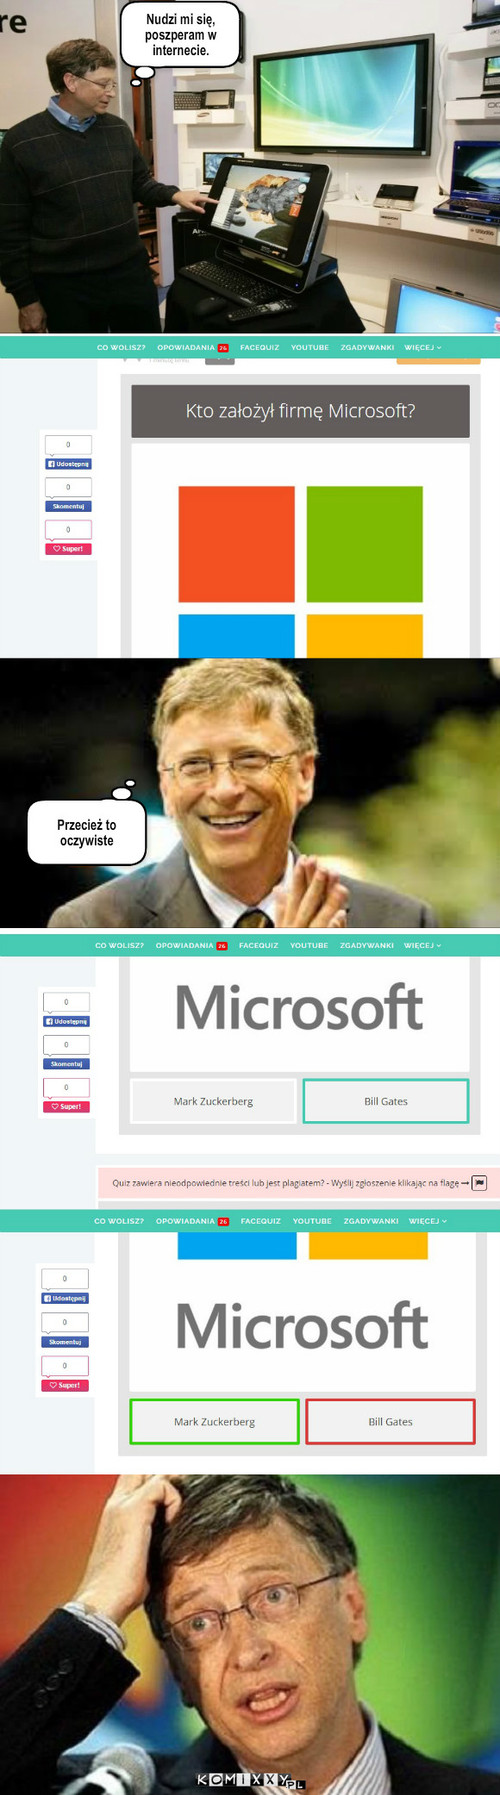 Microsoft – Nudzi mi się, poszperam w internecie. Przecież to oczywiste 